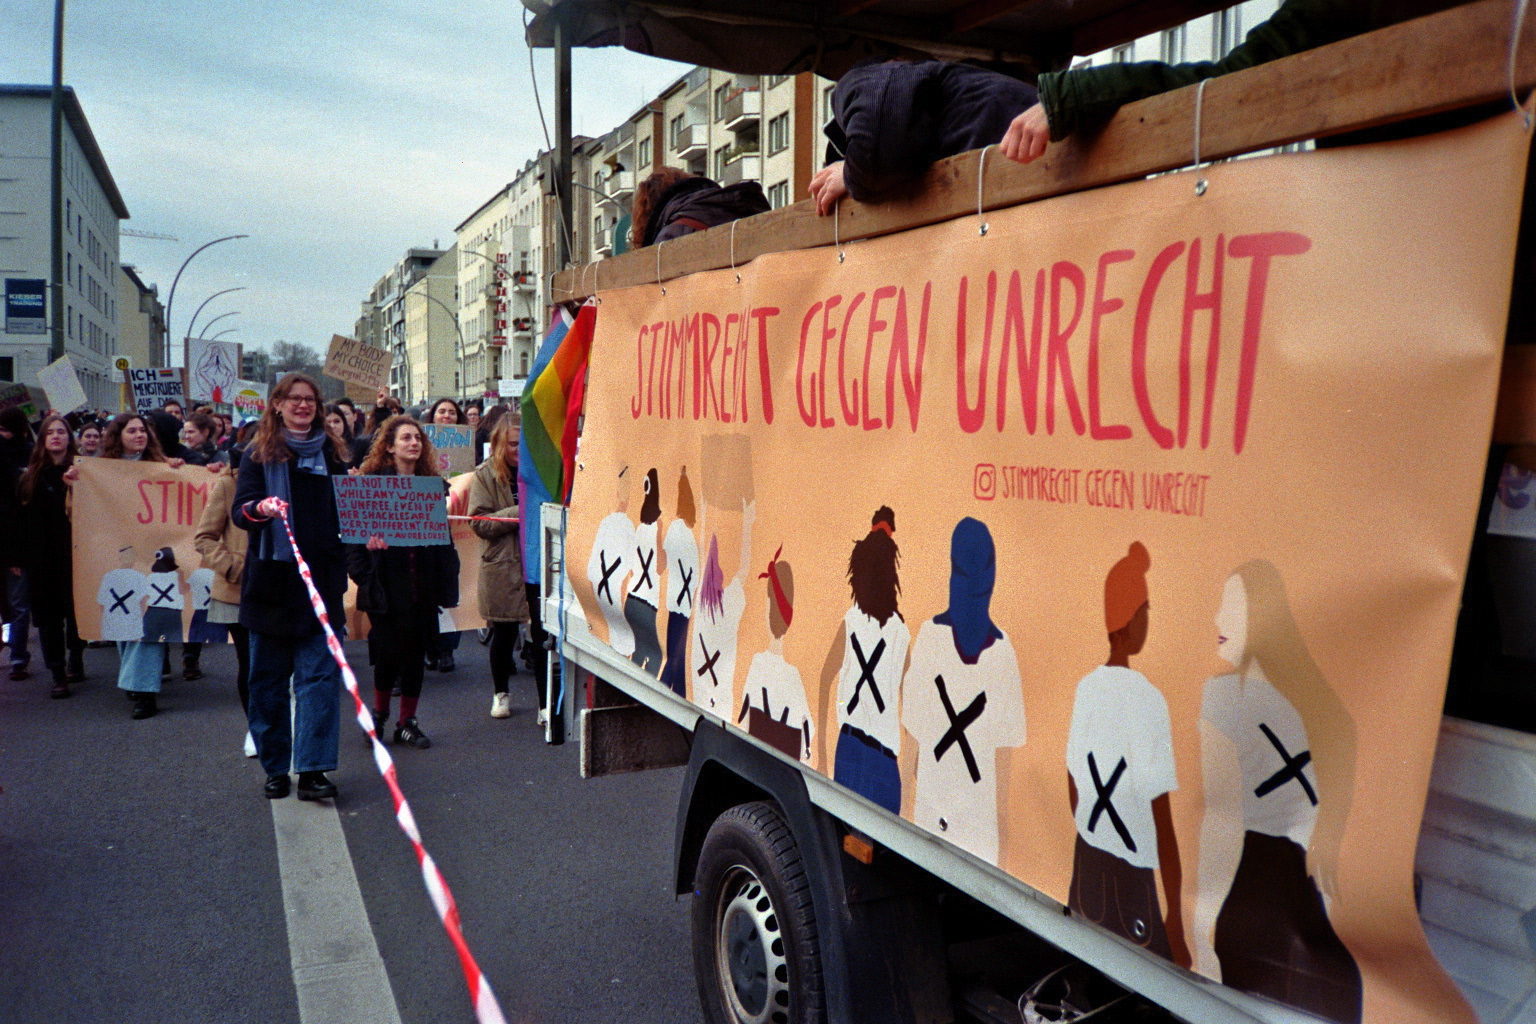 Stimmrecht Gegen Unrecht: Barrierefreier Feminismus aus Berlin